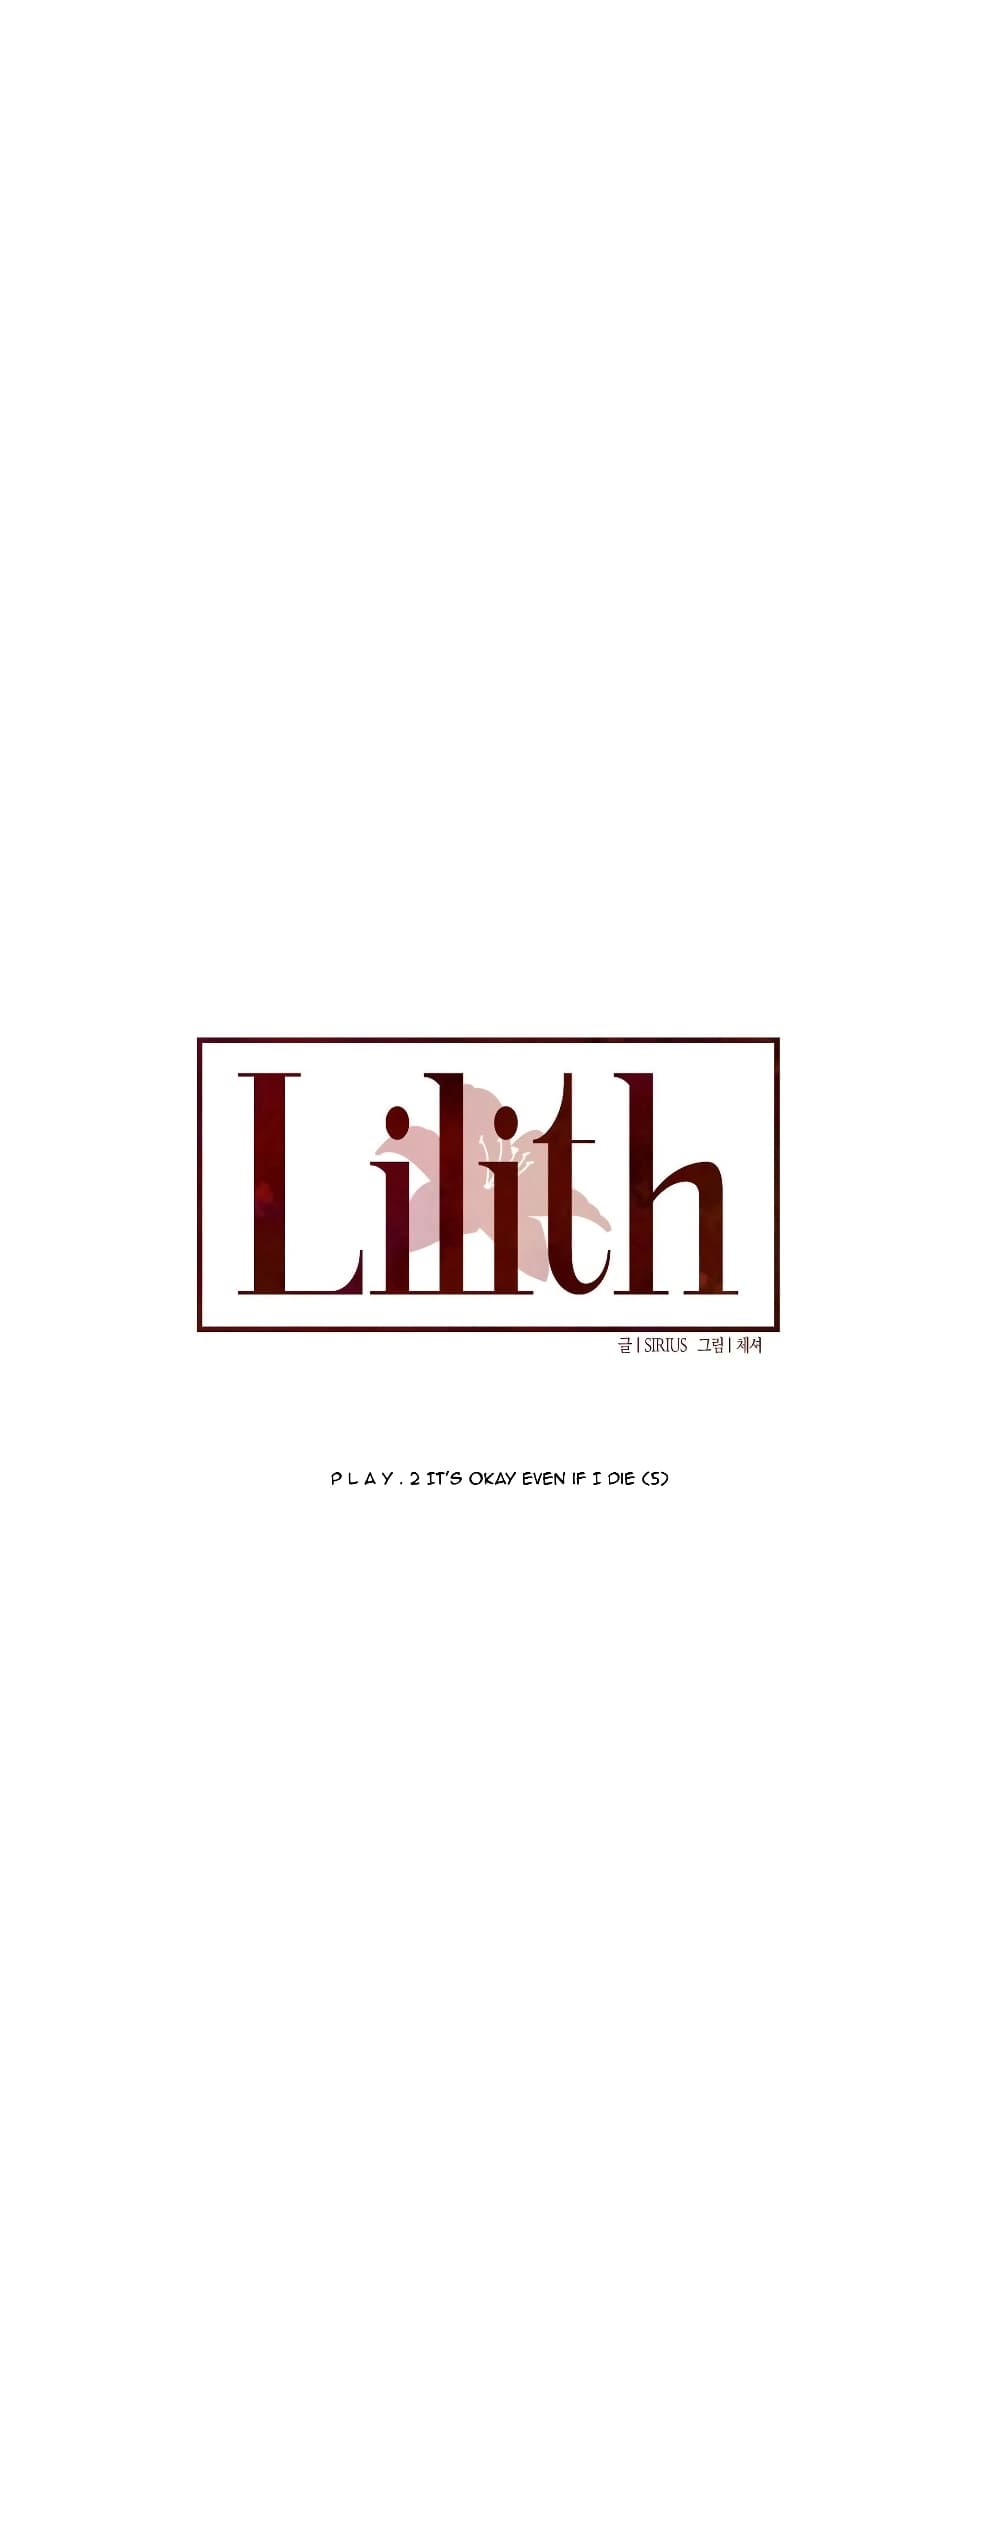 Lilith 13 04